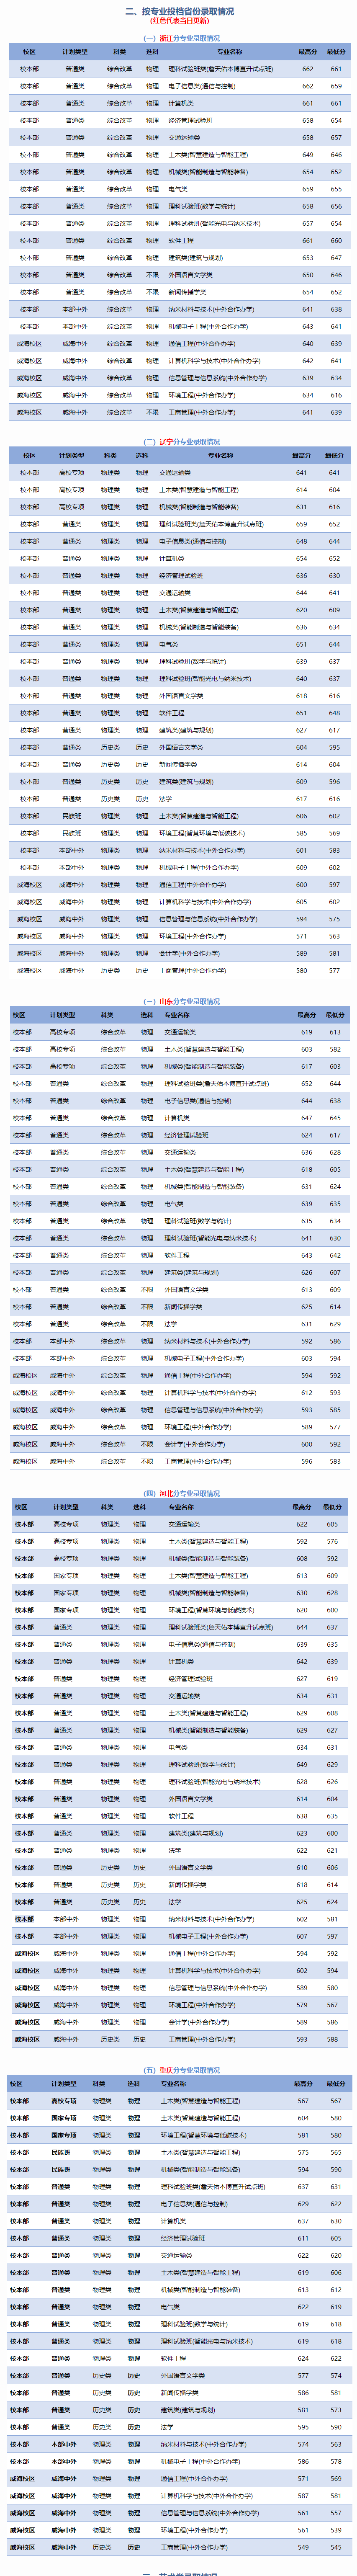 2024年北京交通大学录取分数线是多少分(附各省录取最低分)